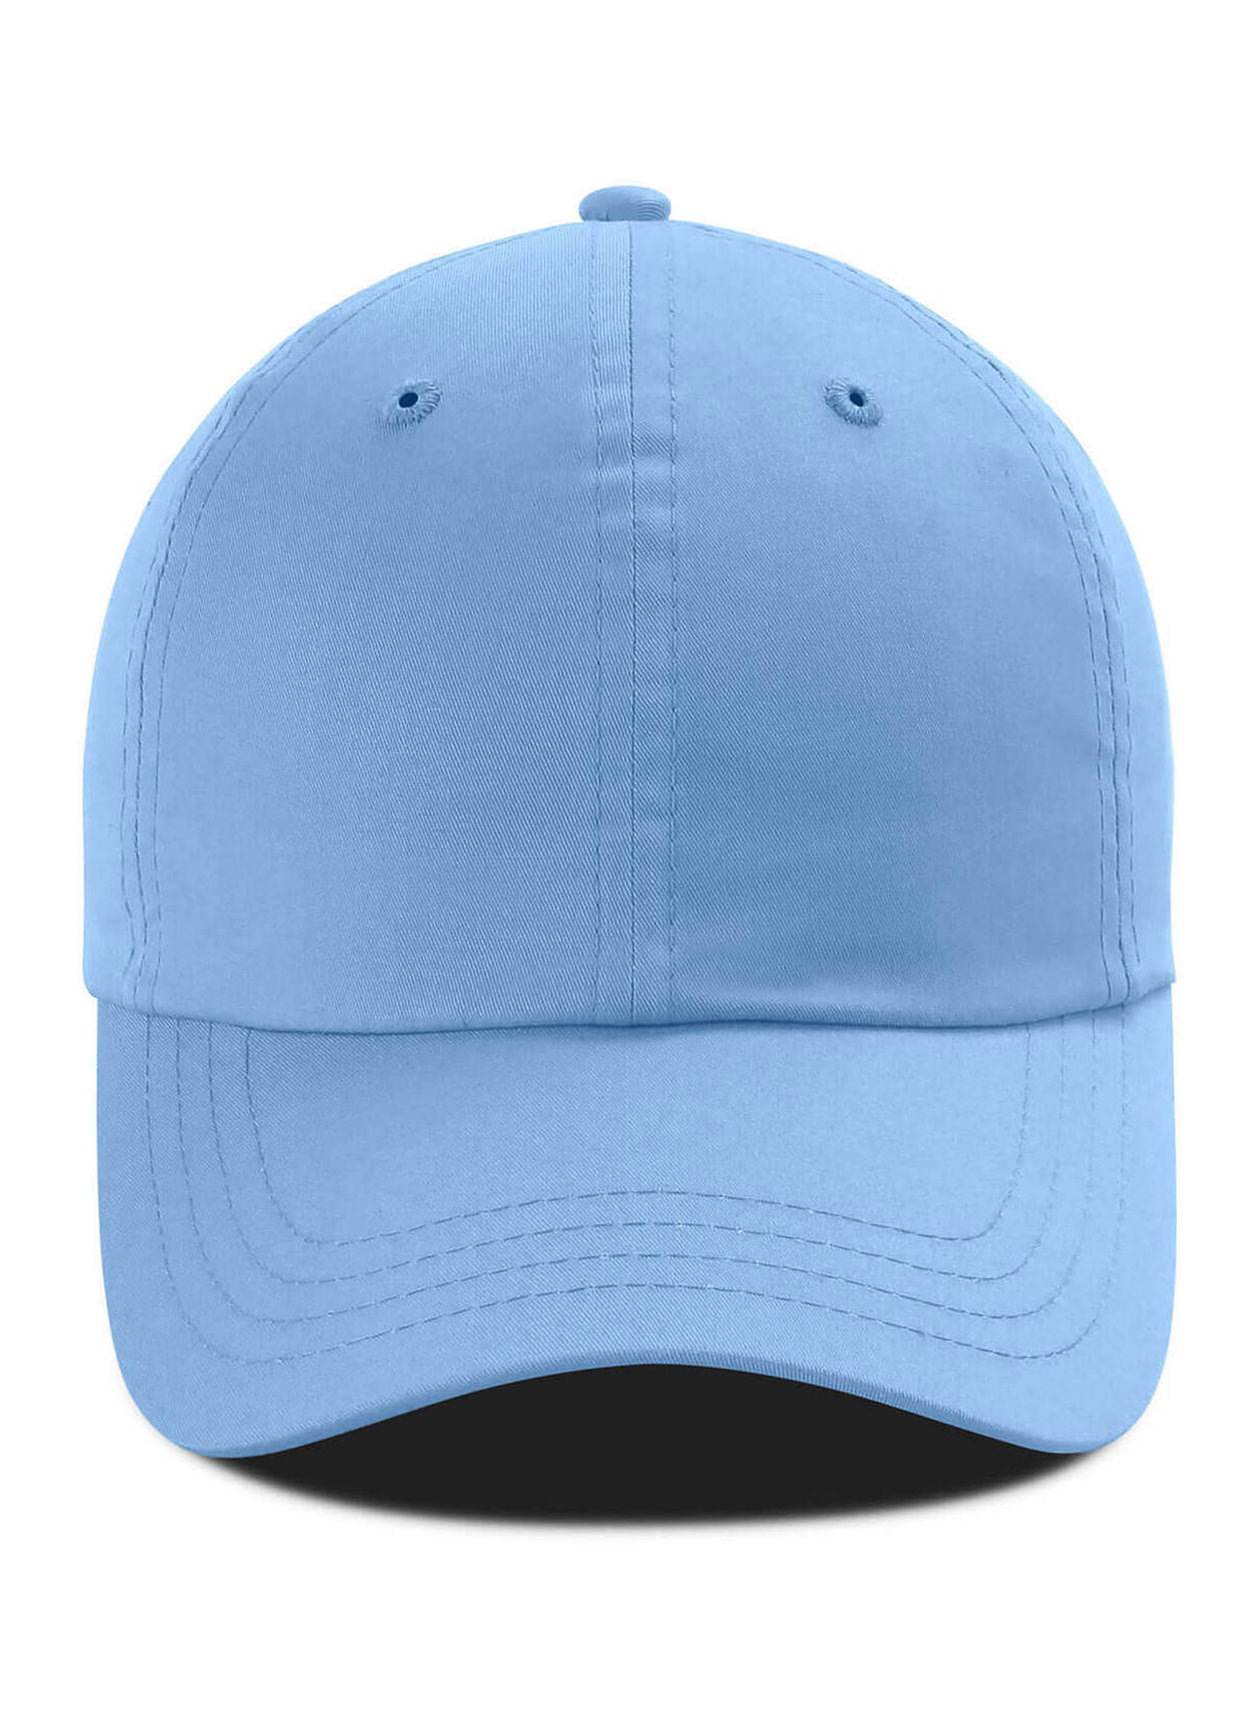 Imperial Powder Blue The Zero Lightweight Cotton Hat